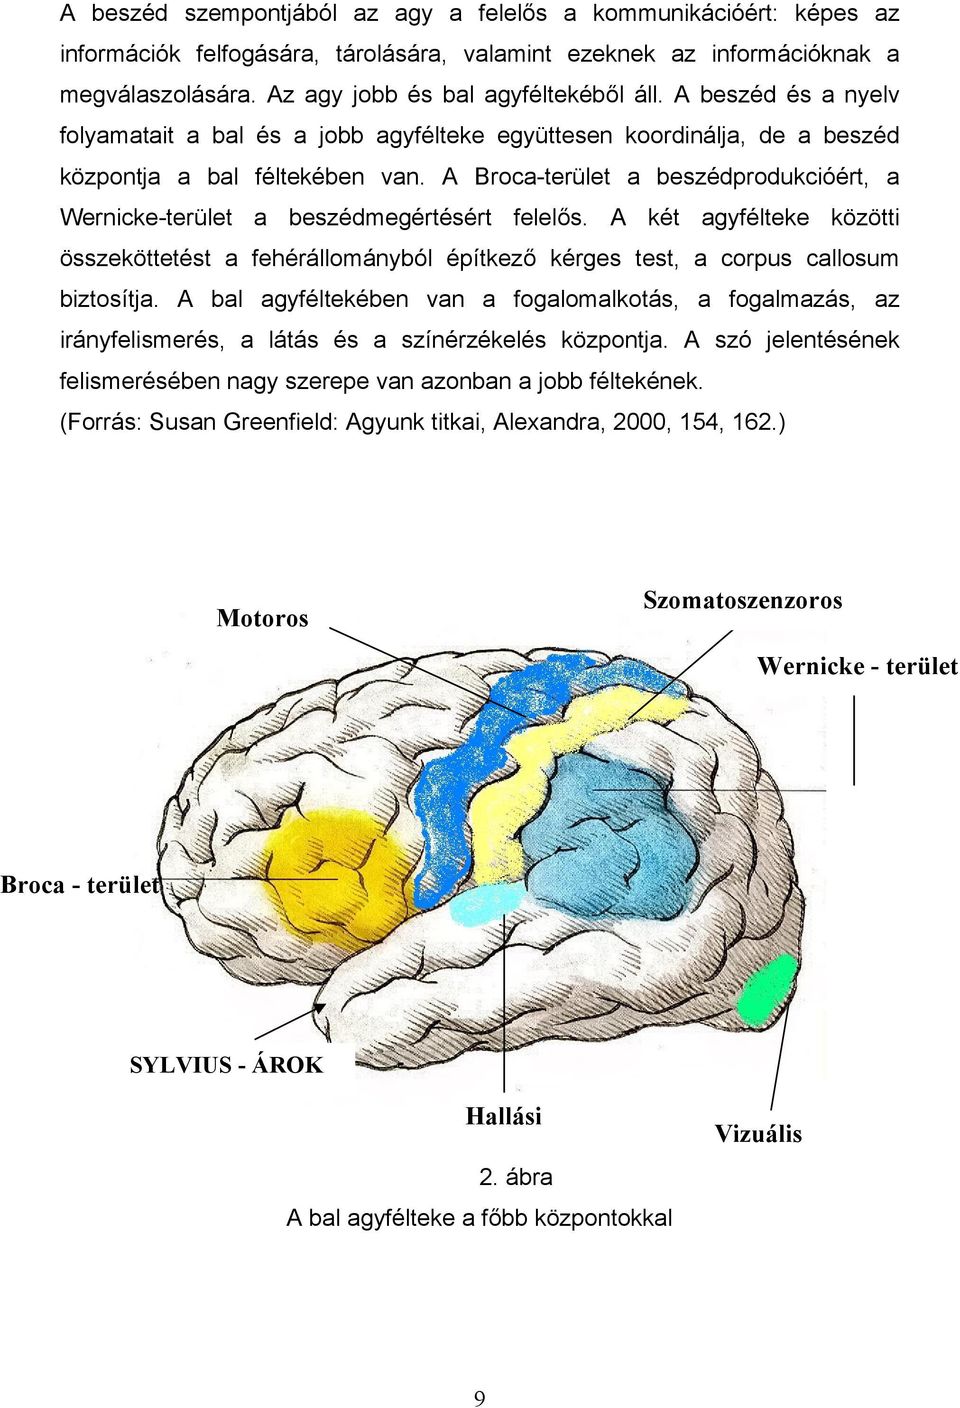 A Broca-terület a beszédprodukcióért, a Wernicke-terület a beszédmegértésért felelős. A két agyfélteke közötti összeköttetést a fehérállományból építkező kérges test, a corpus callosum biztosítja.